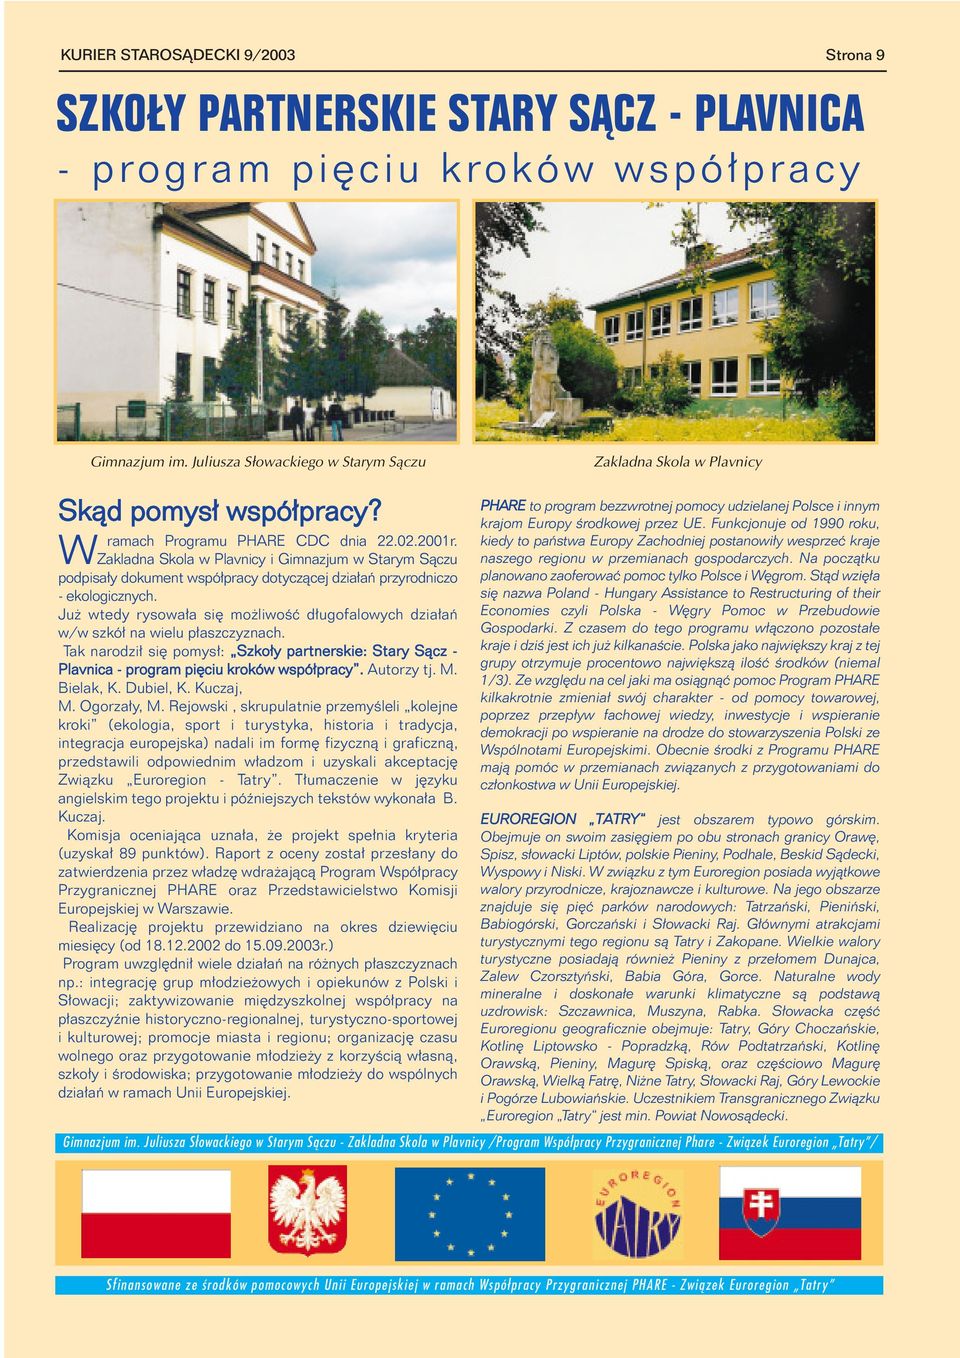 Zakladna Skola w Plavnicy i Gimnazjum w Starym S¹czu podpisa³y dokument wspó³pracy dotycz¹cej dzia³añ przyrodniczo - ekologicznych.